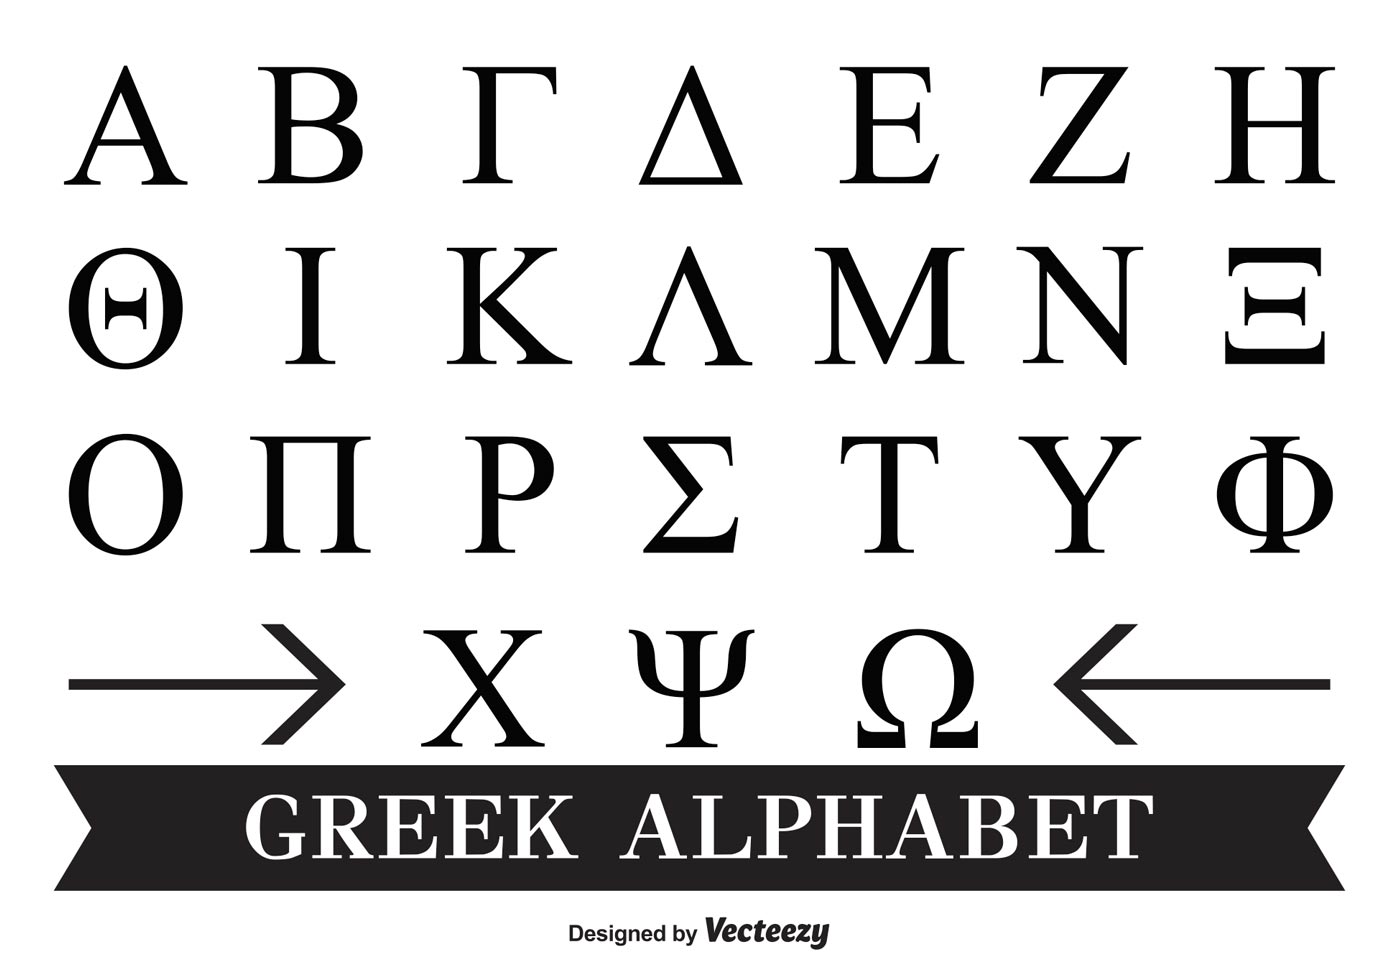 Greek Letters Free Vector Art 2 694 Free Downloads